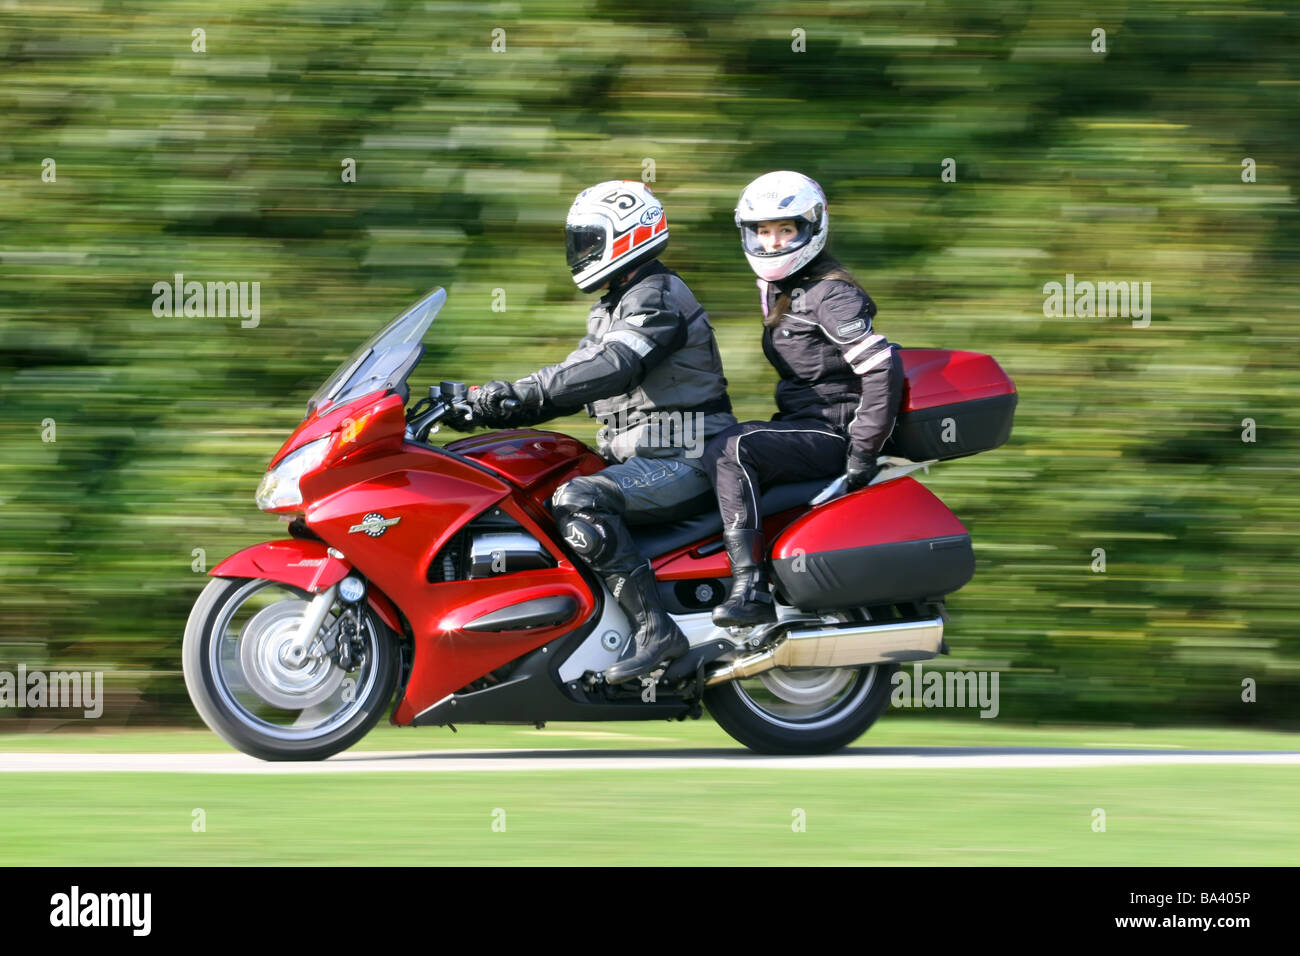 Moto rouge avec homme rider en noir cuir et leurs femmes les deux passagers portant des casques on rural road Banque D'Images